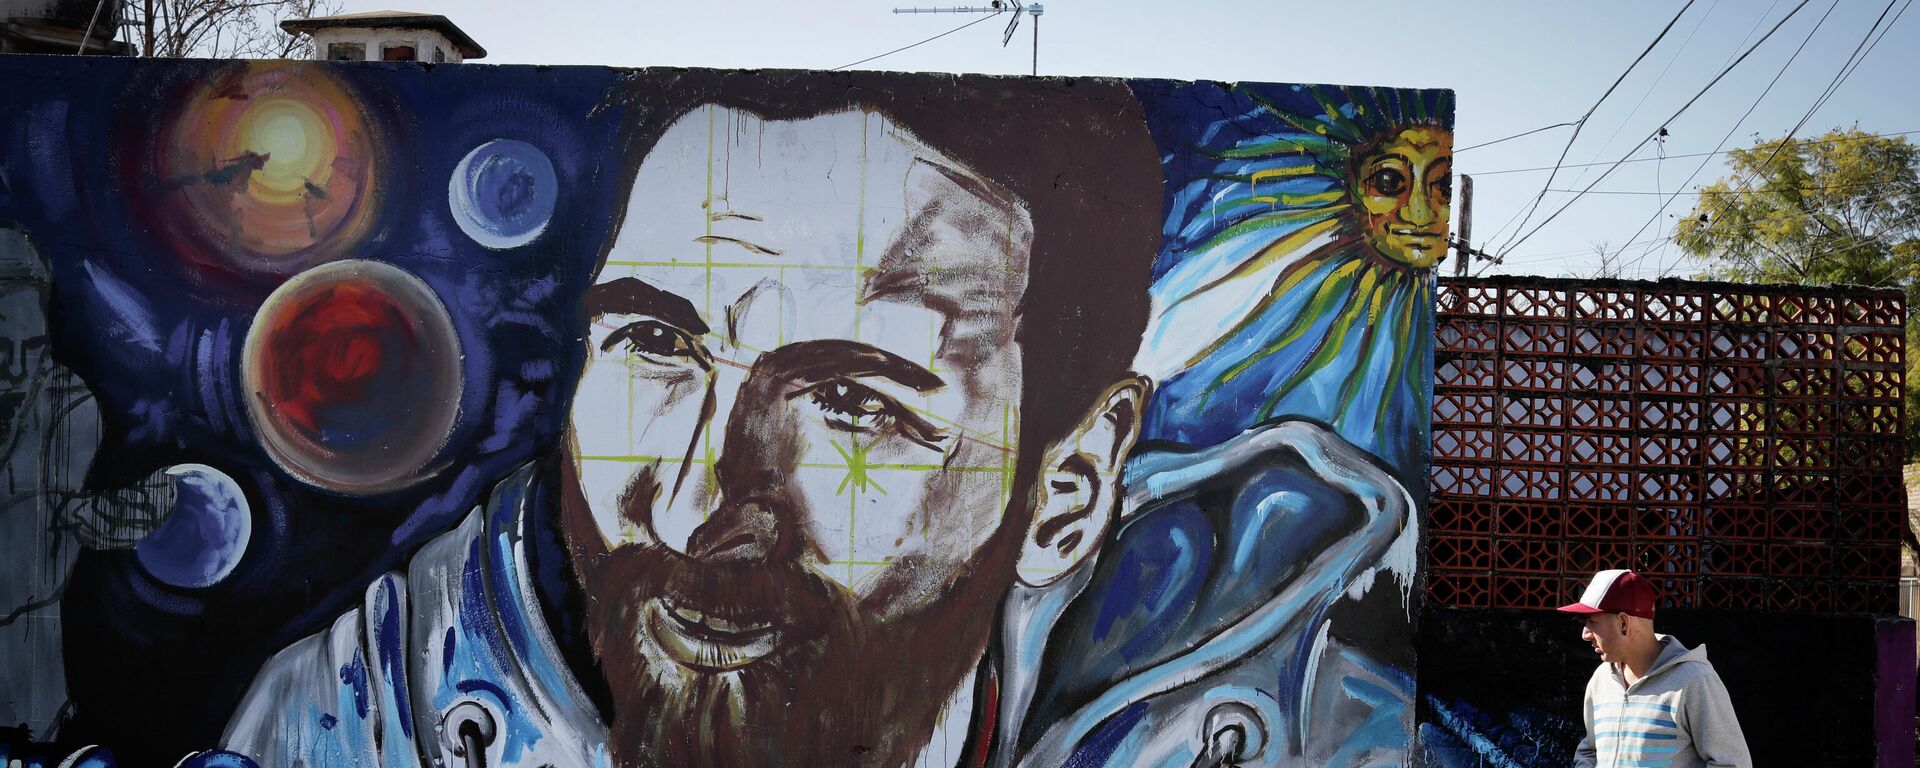 Un mural con el rostro de Lionel Messi en la ciudad argentina de Rosario - Sputnik Mundo, 1920, 10.09.2021